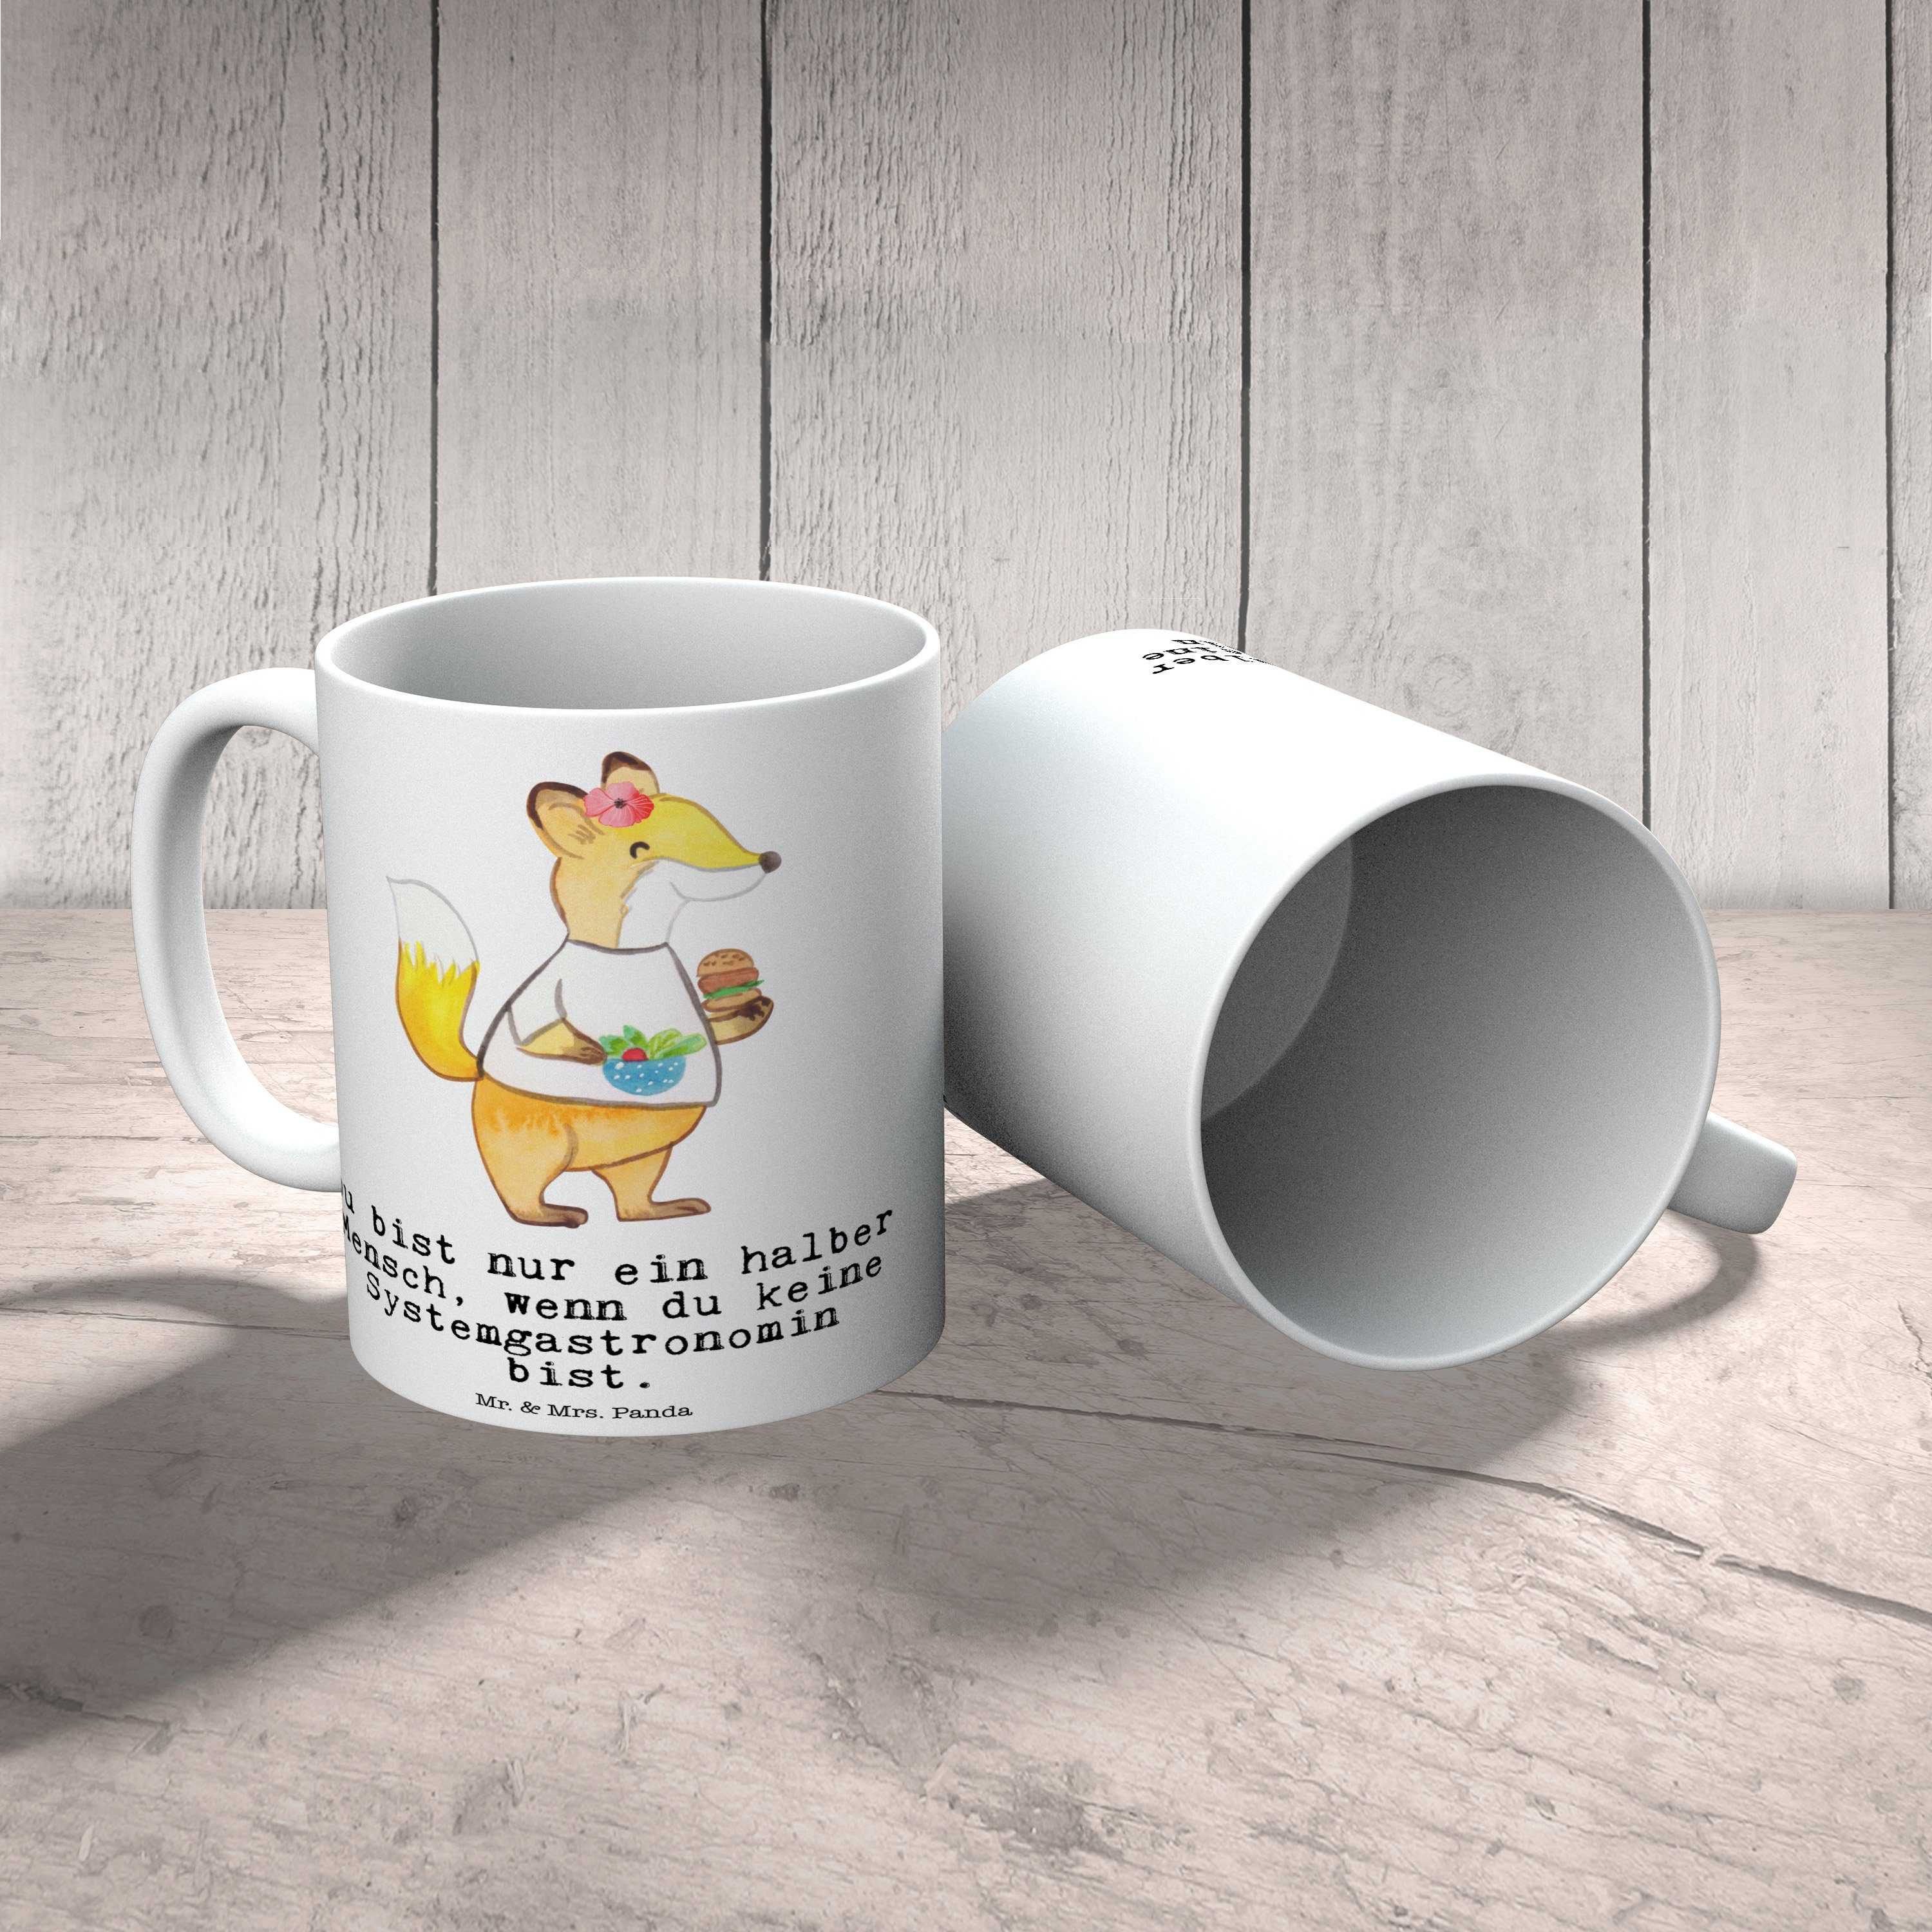 Mr. & Mrs. Panda Tasse Geschenk, mit Weiß - Keramik Systemgastronomin Herz Po, Keramiktasse, Tasse, 